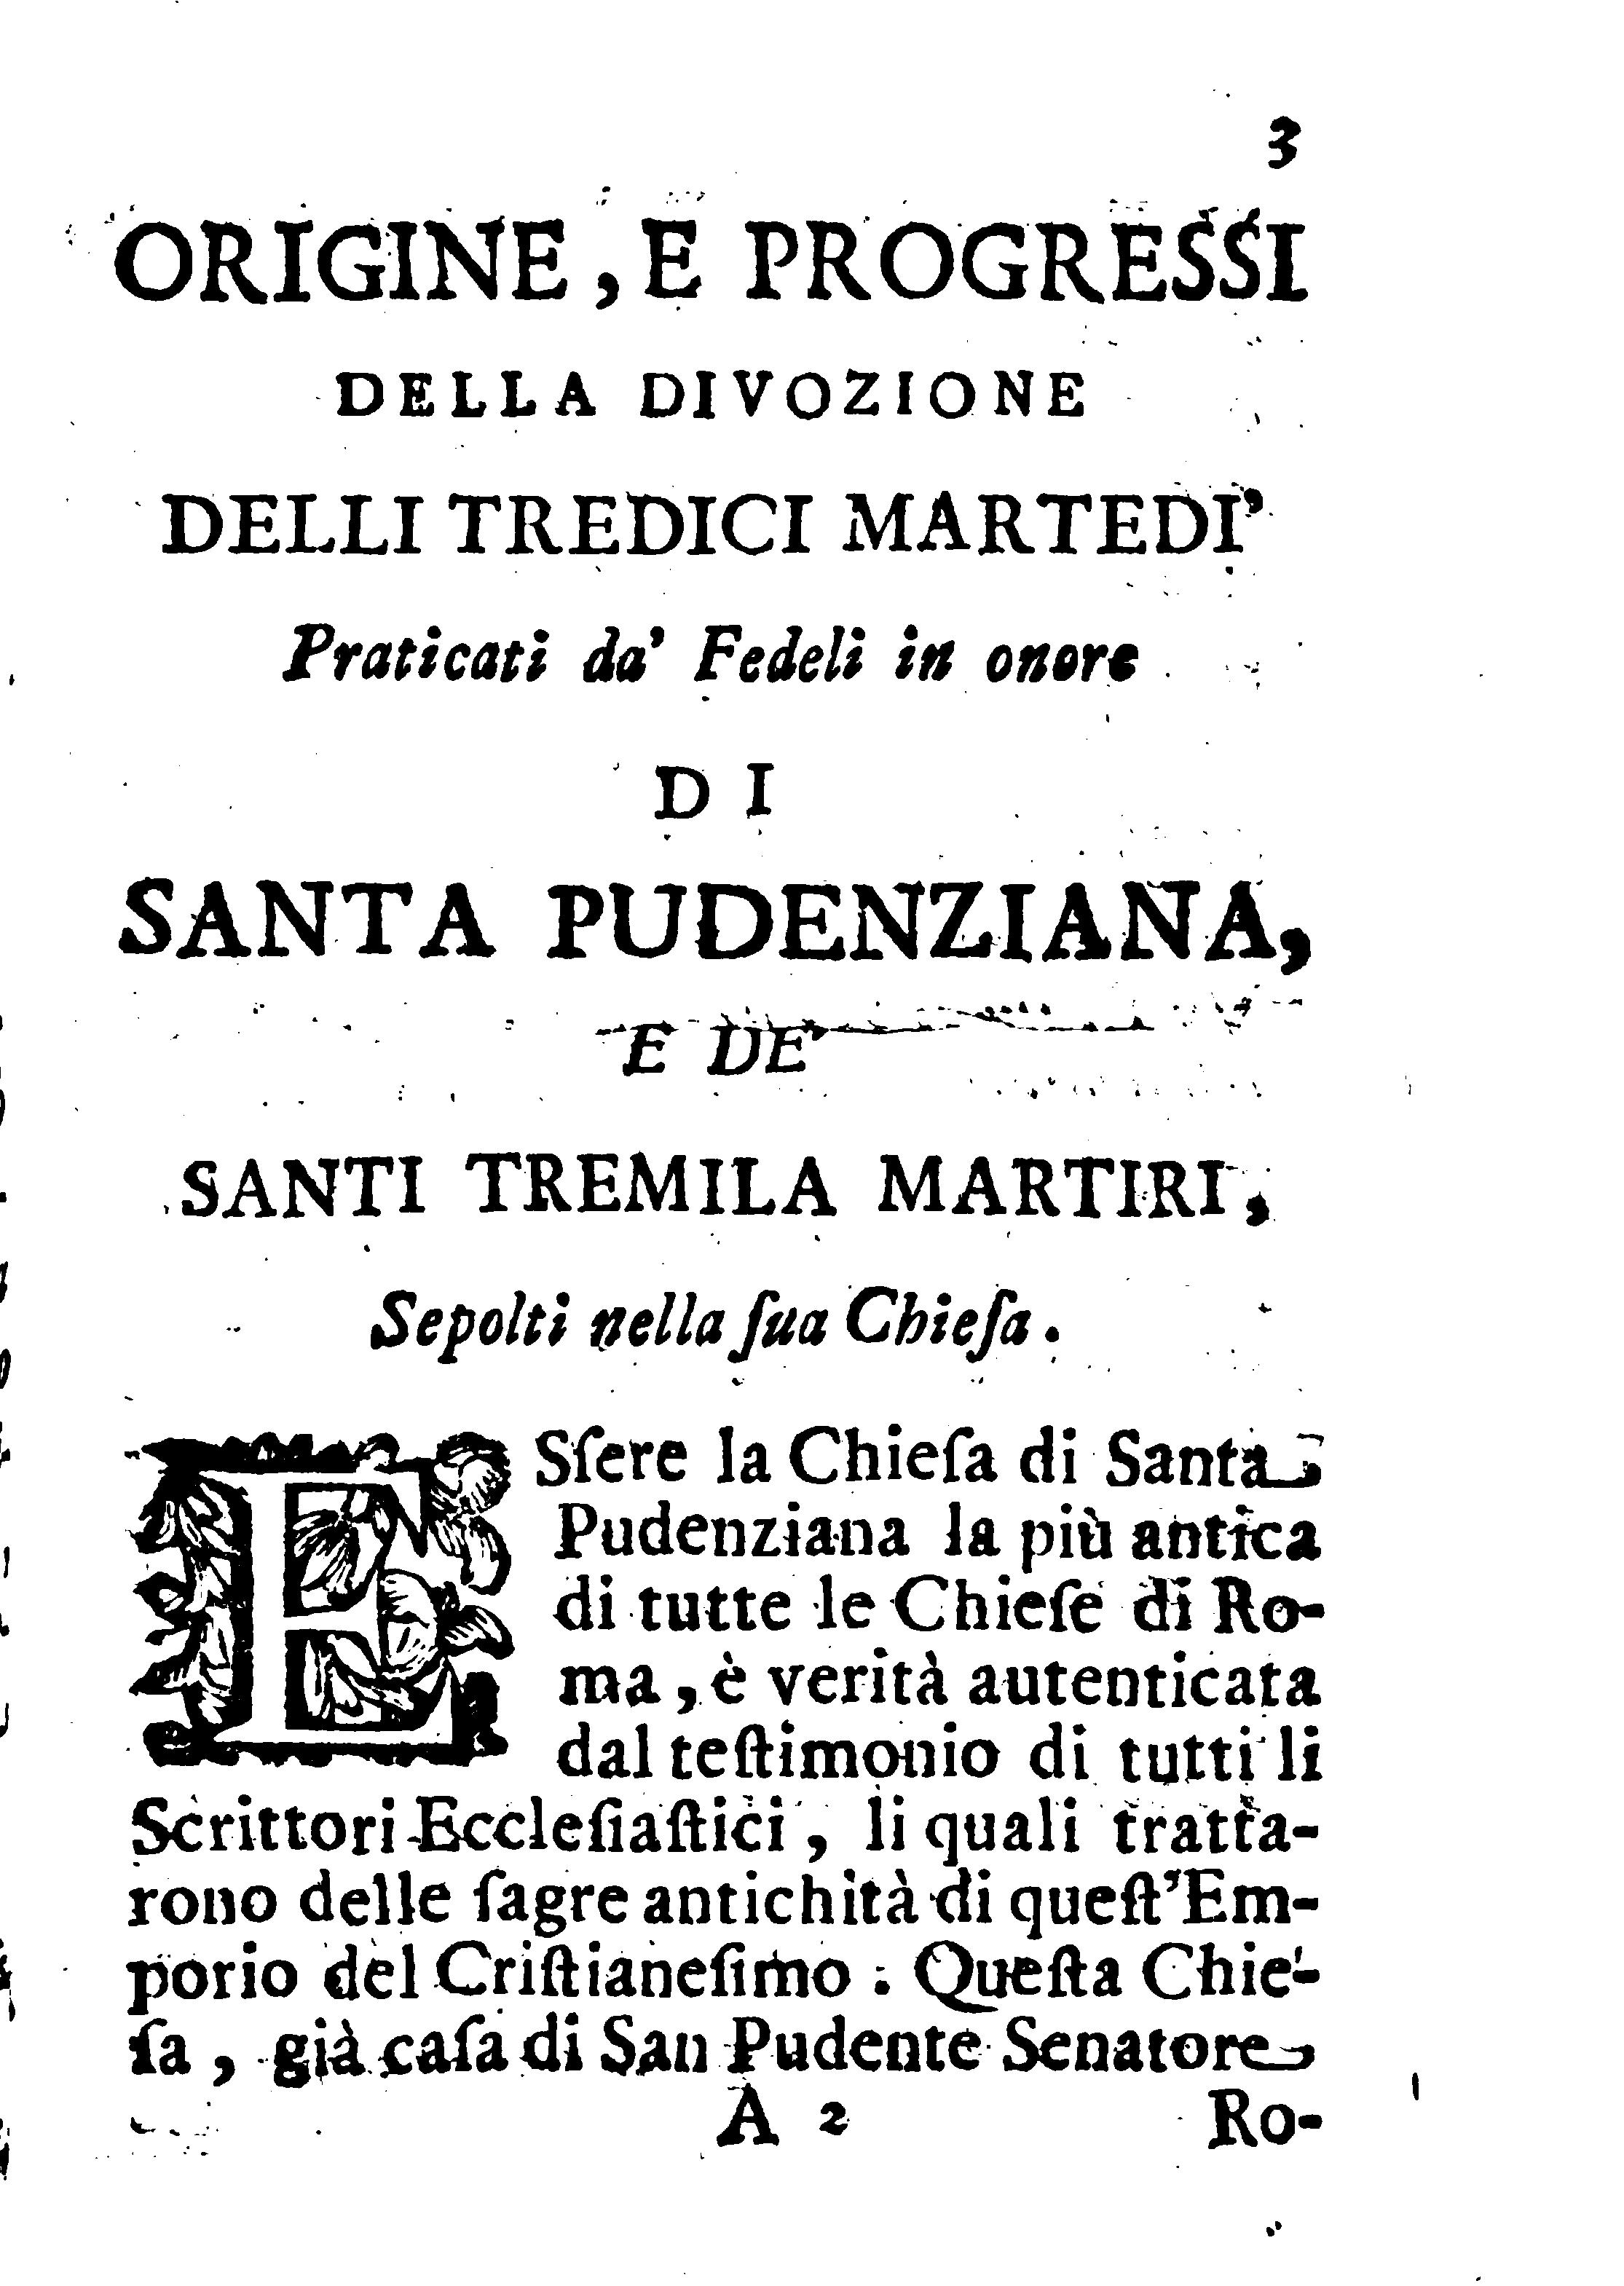 Devozione a Santa Prudenziana, Vergine (19.5)